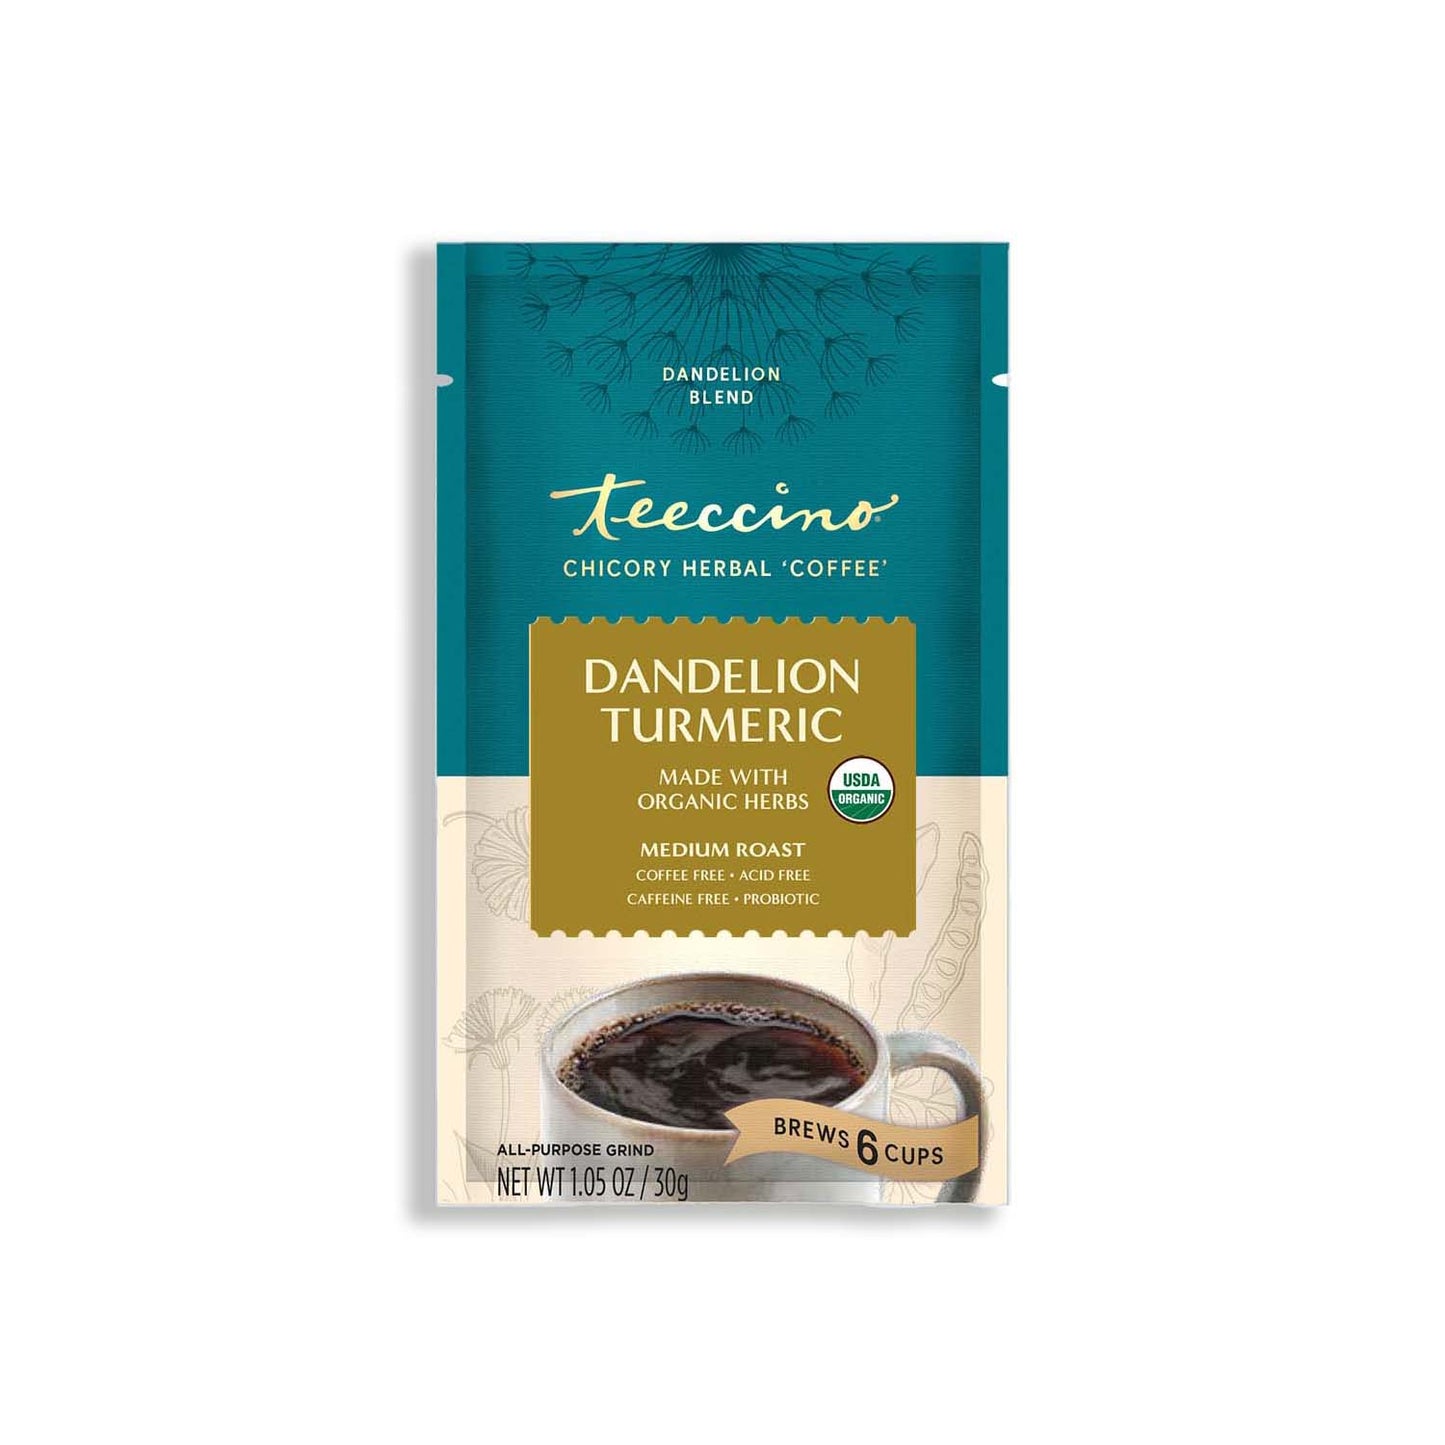 Dandelion Turmeric Herbal Coffee